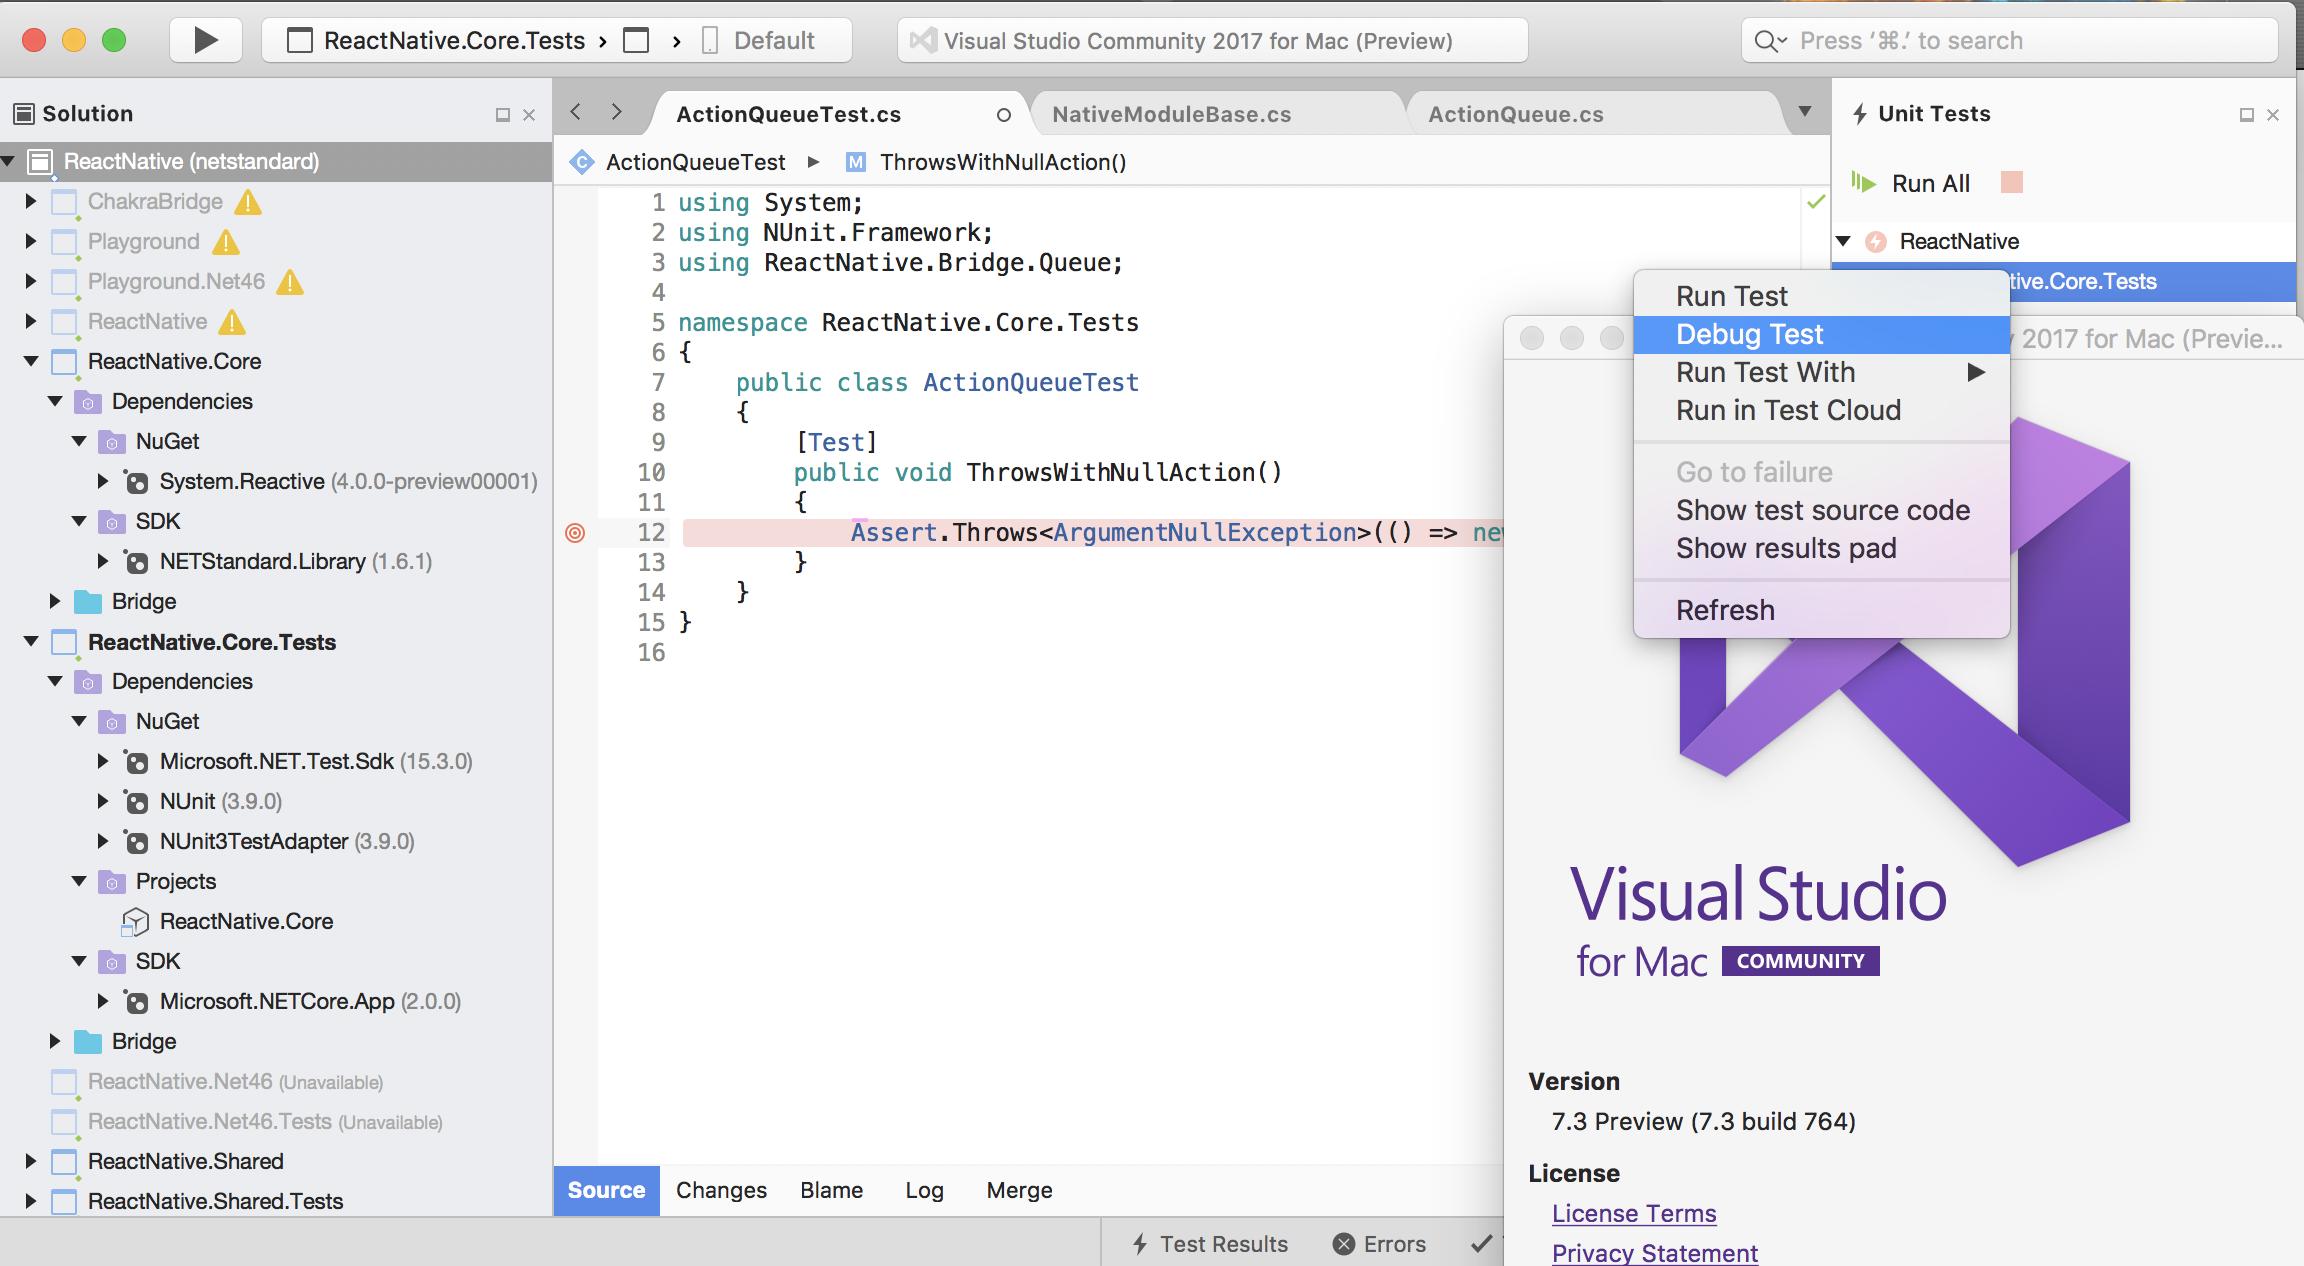 visual studio for mac bug report